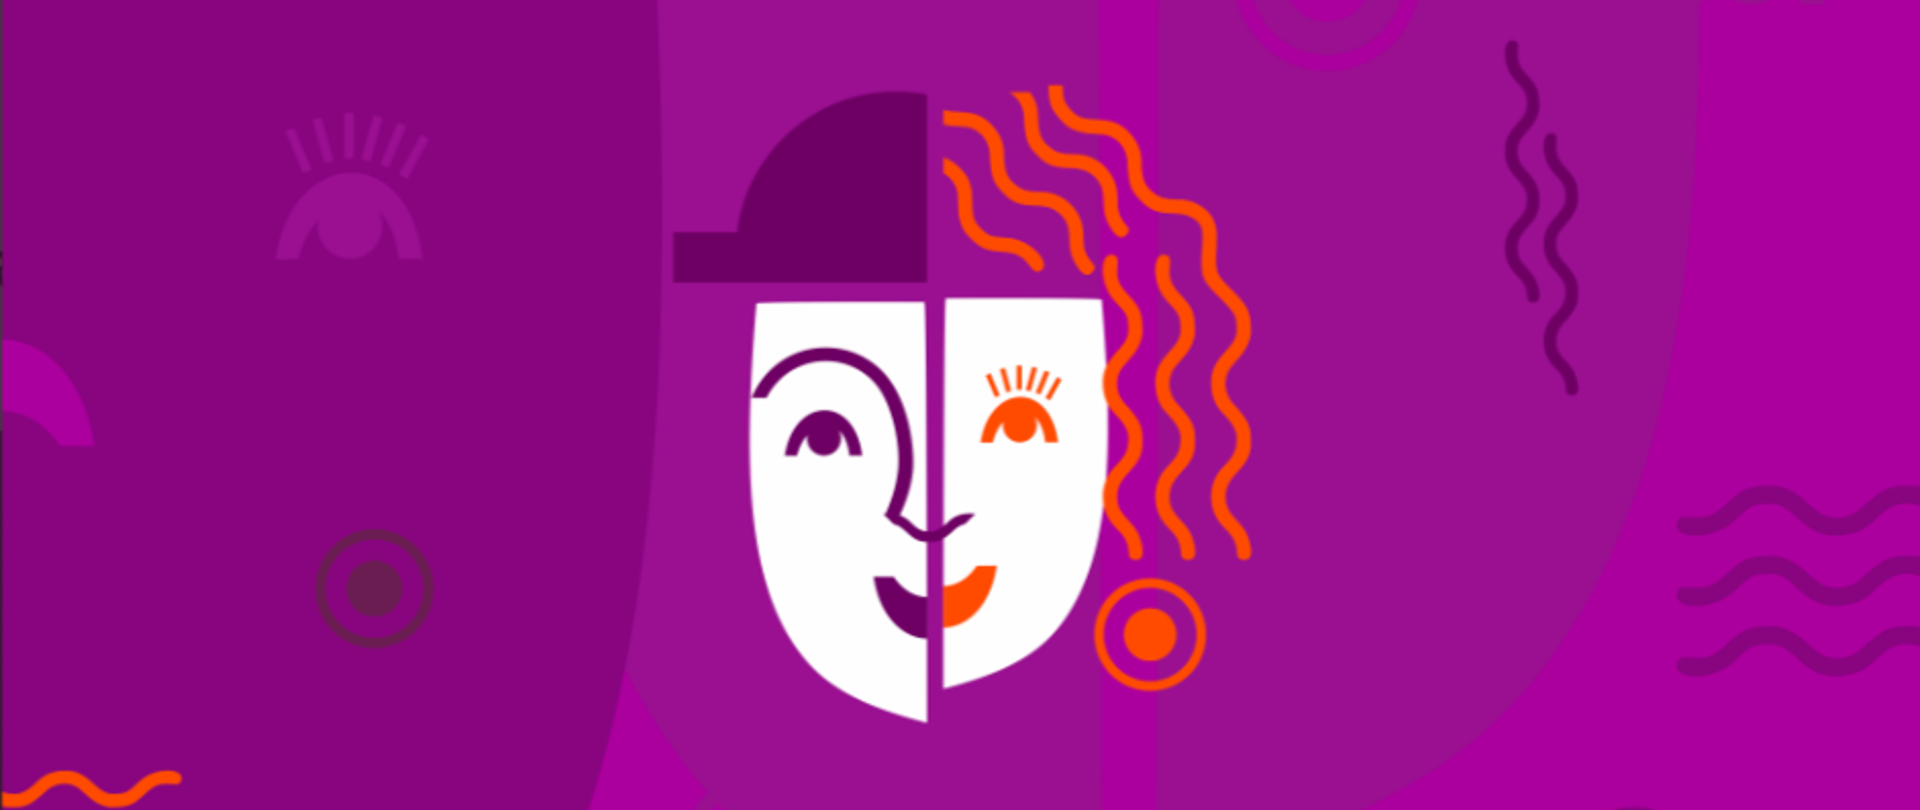 Rysunek asymetrycznej twarzy, maski kobieta-mężczyzna na fioletowym tle